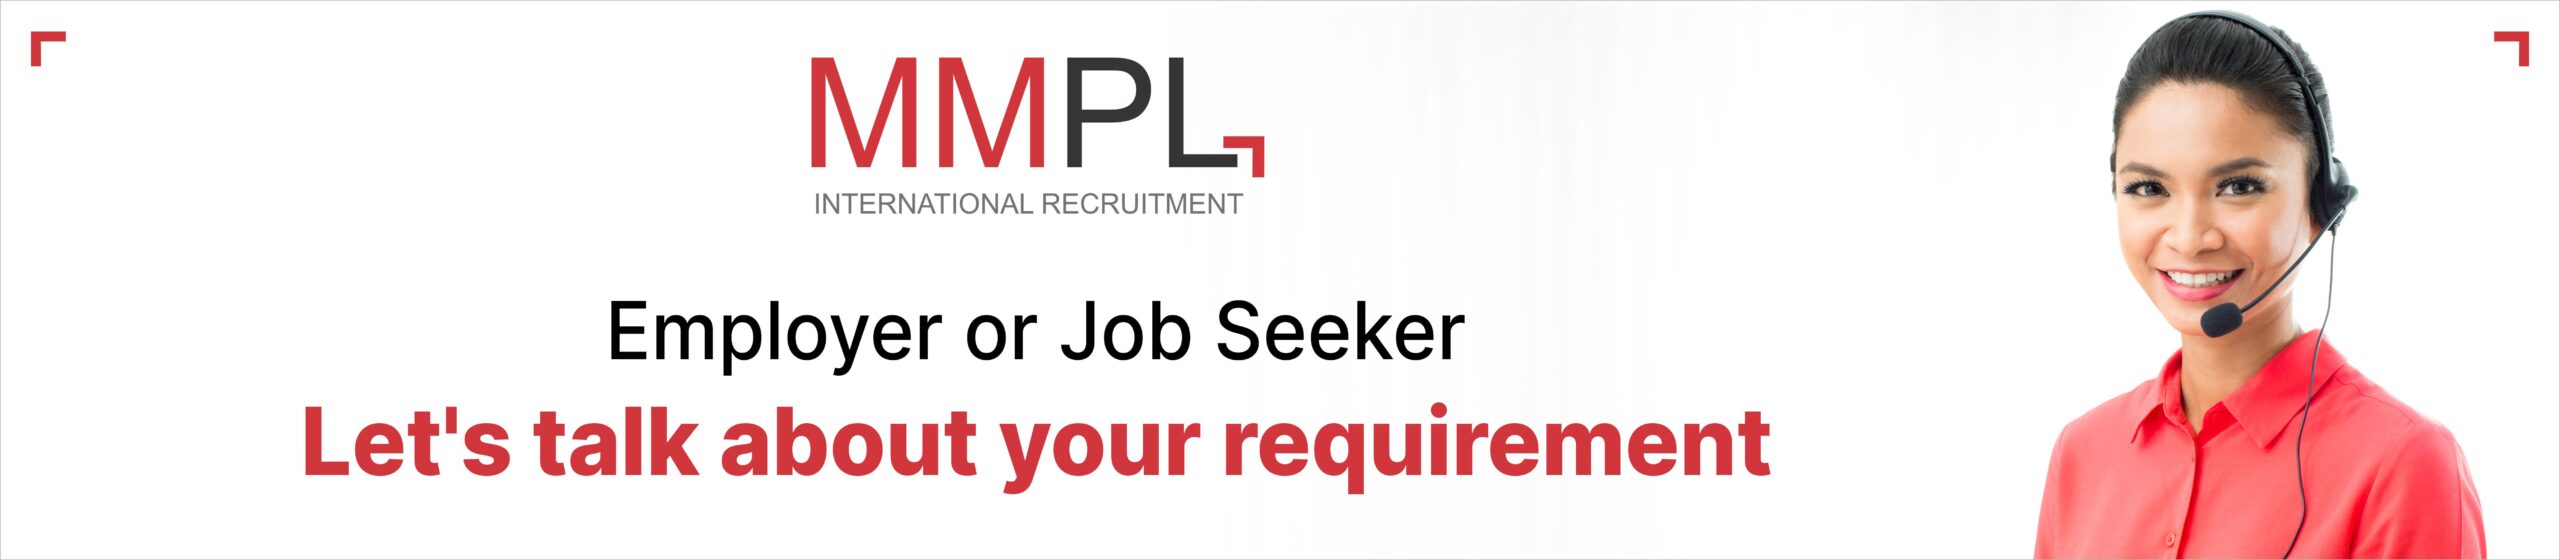 Job Seekers - MMPL Global